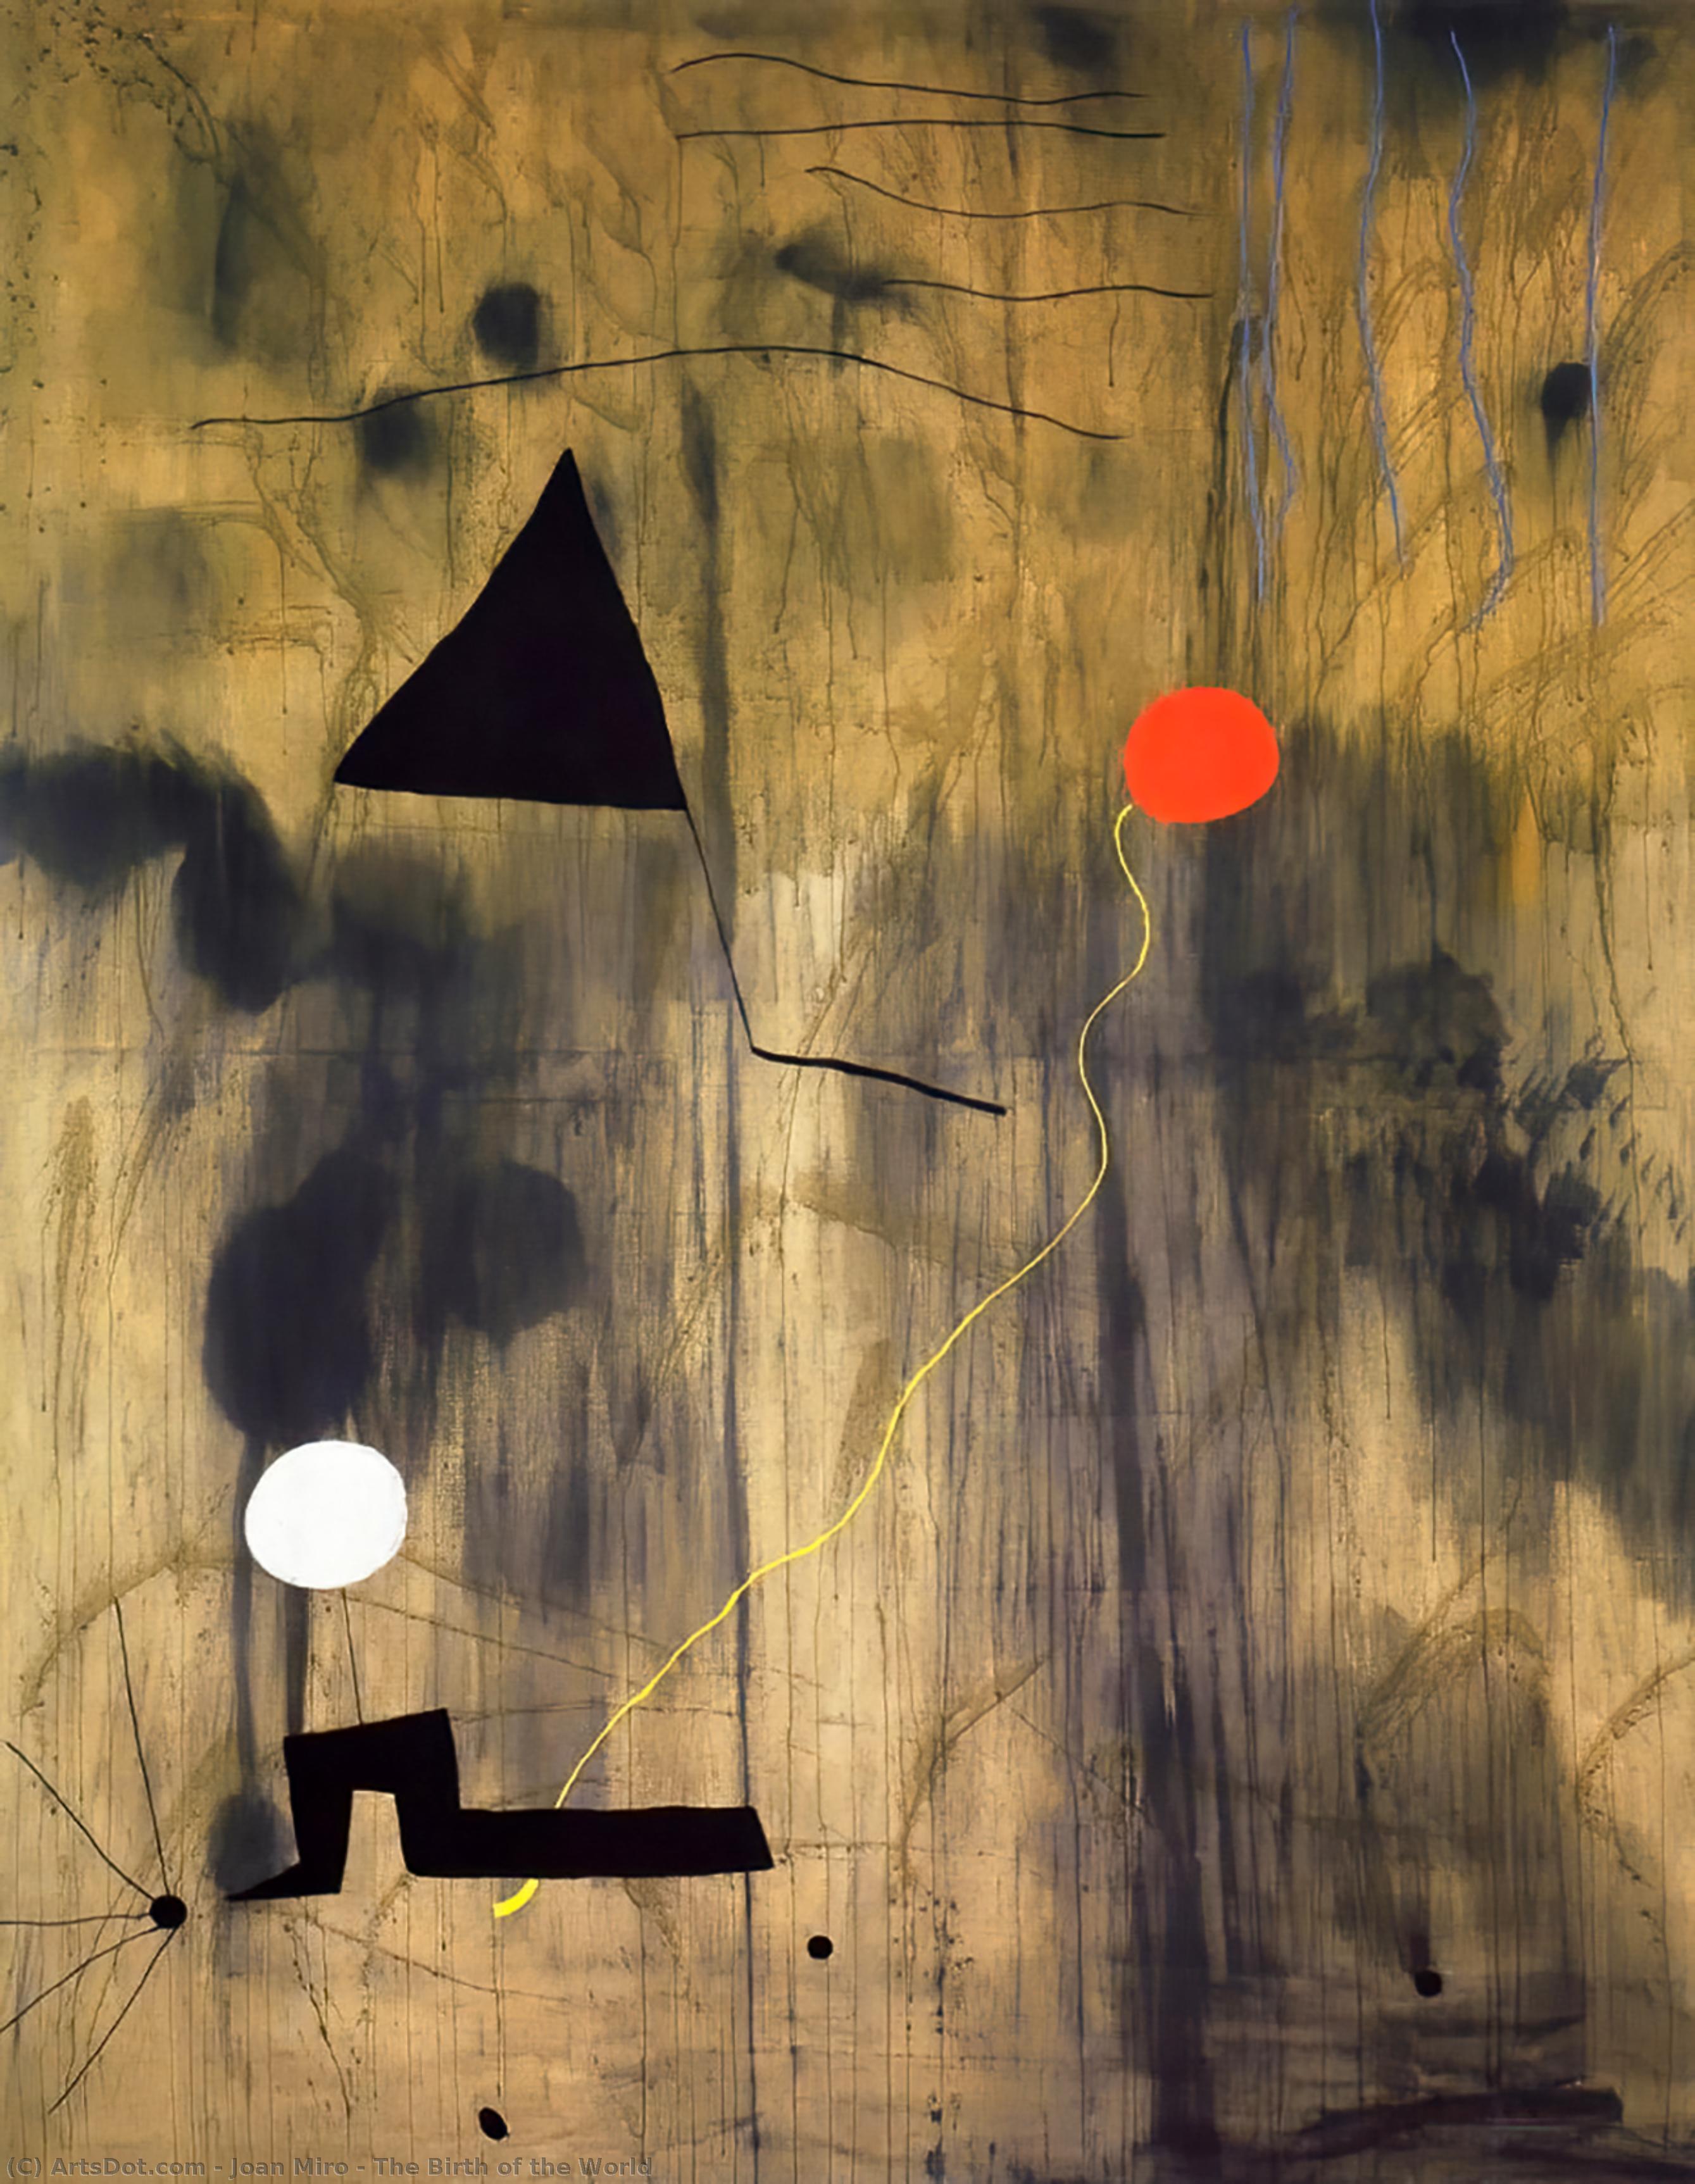 Acheter Reproductions D'art De Musée La naissance du monde, 1925 de Joan Miró (Inspiré par) (1893-1983, Spain) | ArtsDot.com